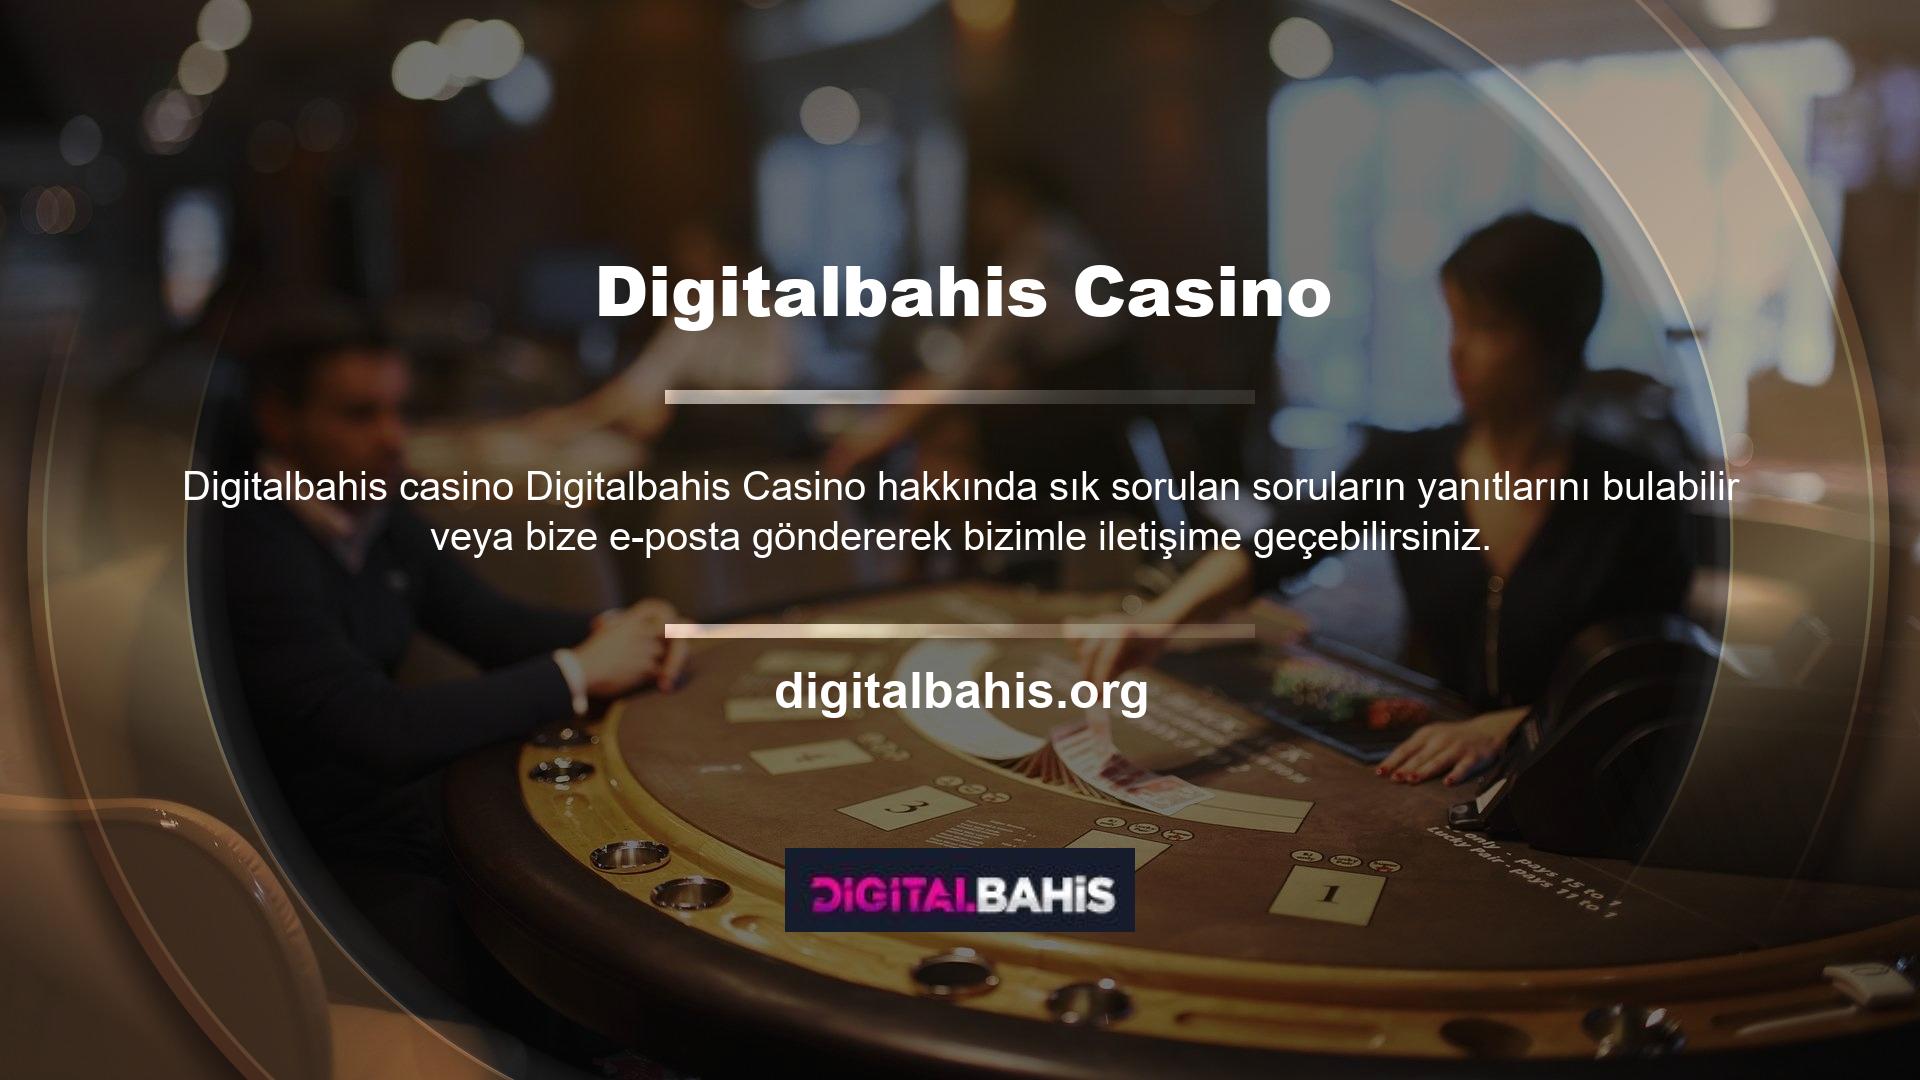 Mobil uyumlu alt yapısı sayesinde, nerede olursanız olun, cihazınızdan giriş yaparak casino oyunları oynamaya devam edebilirsiniz